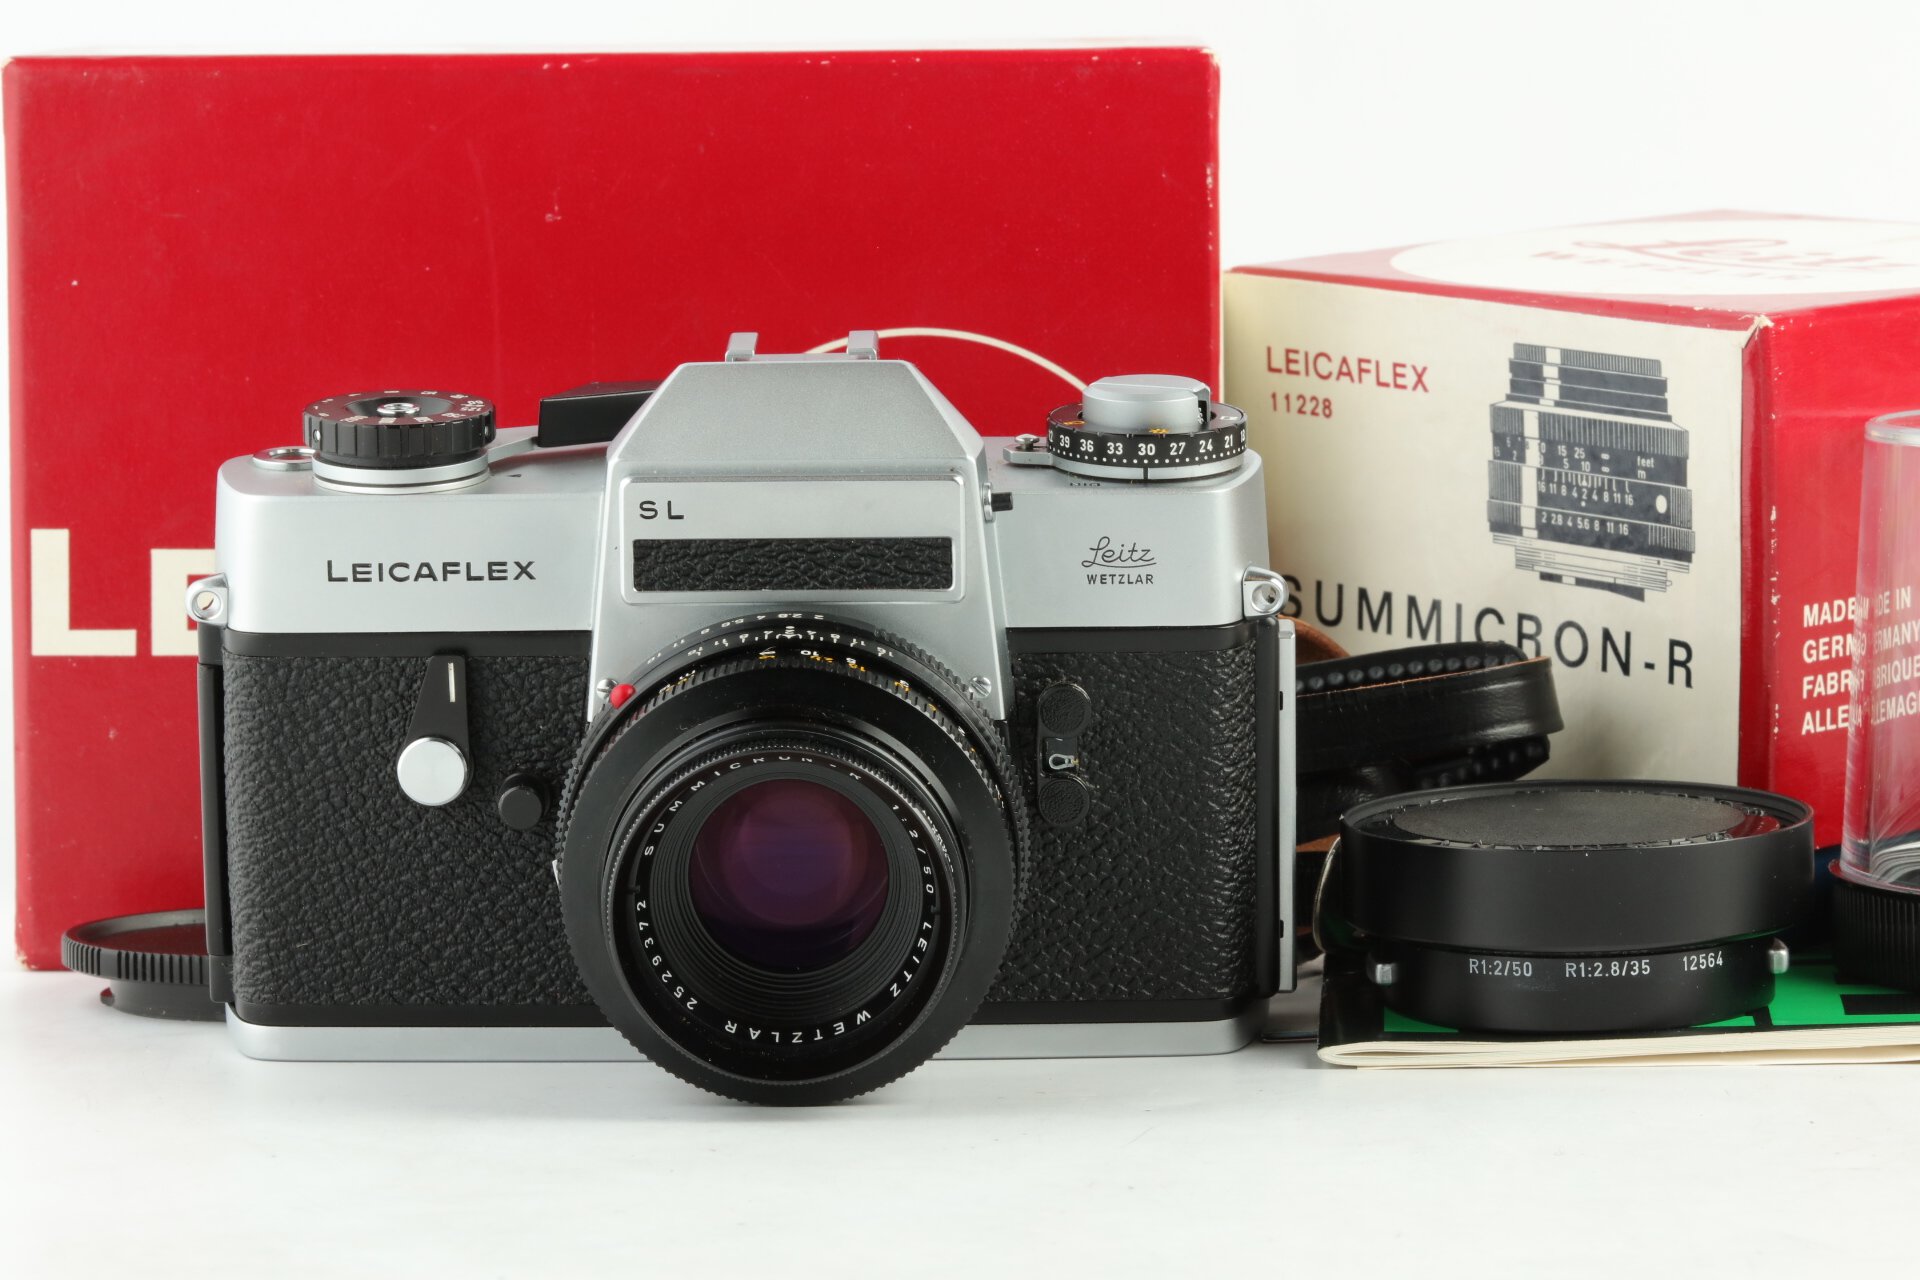 Leicaflex SL chrom mit Summicron-R 2/50mm 2CAM 11228